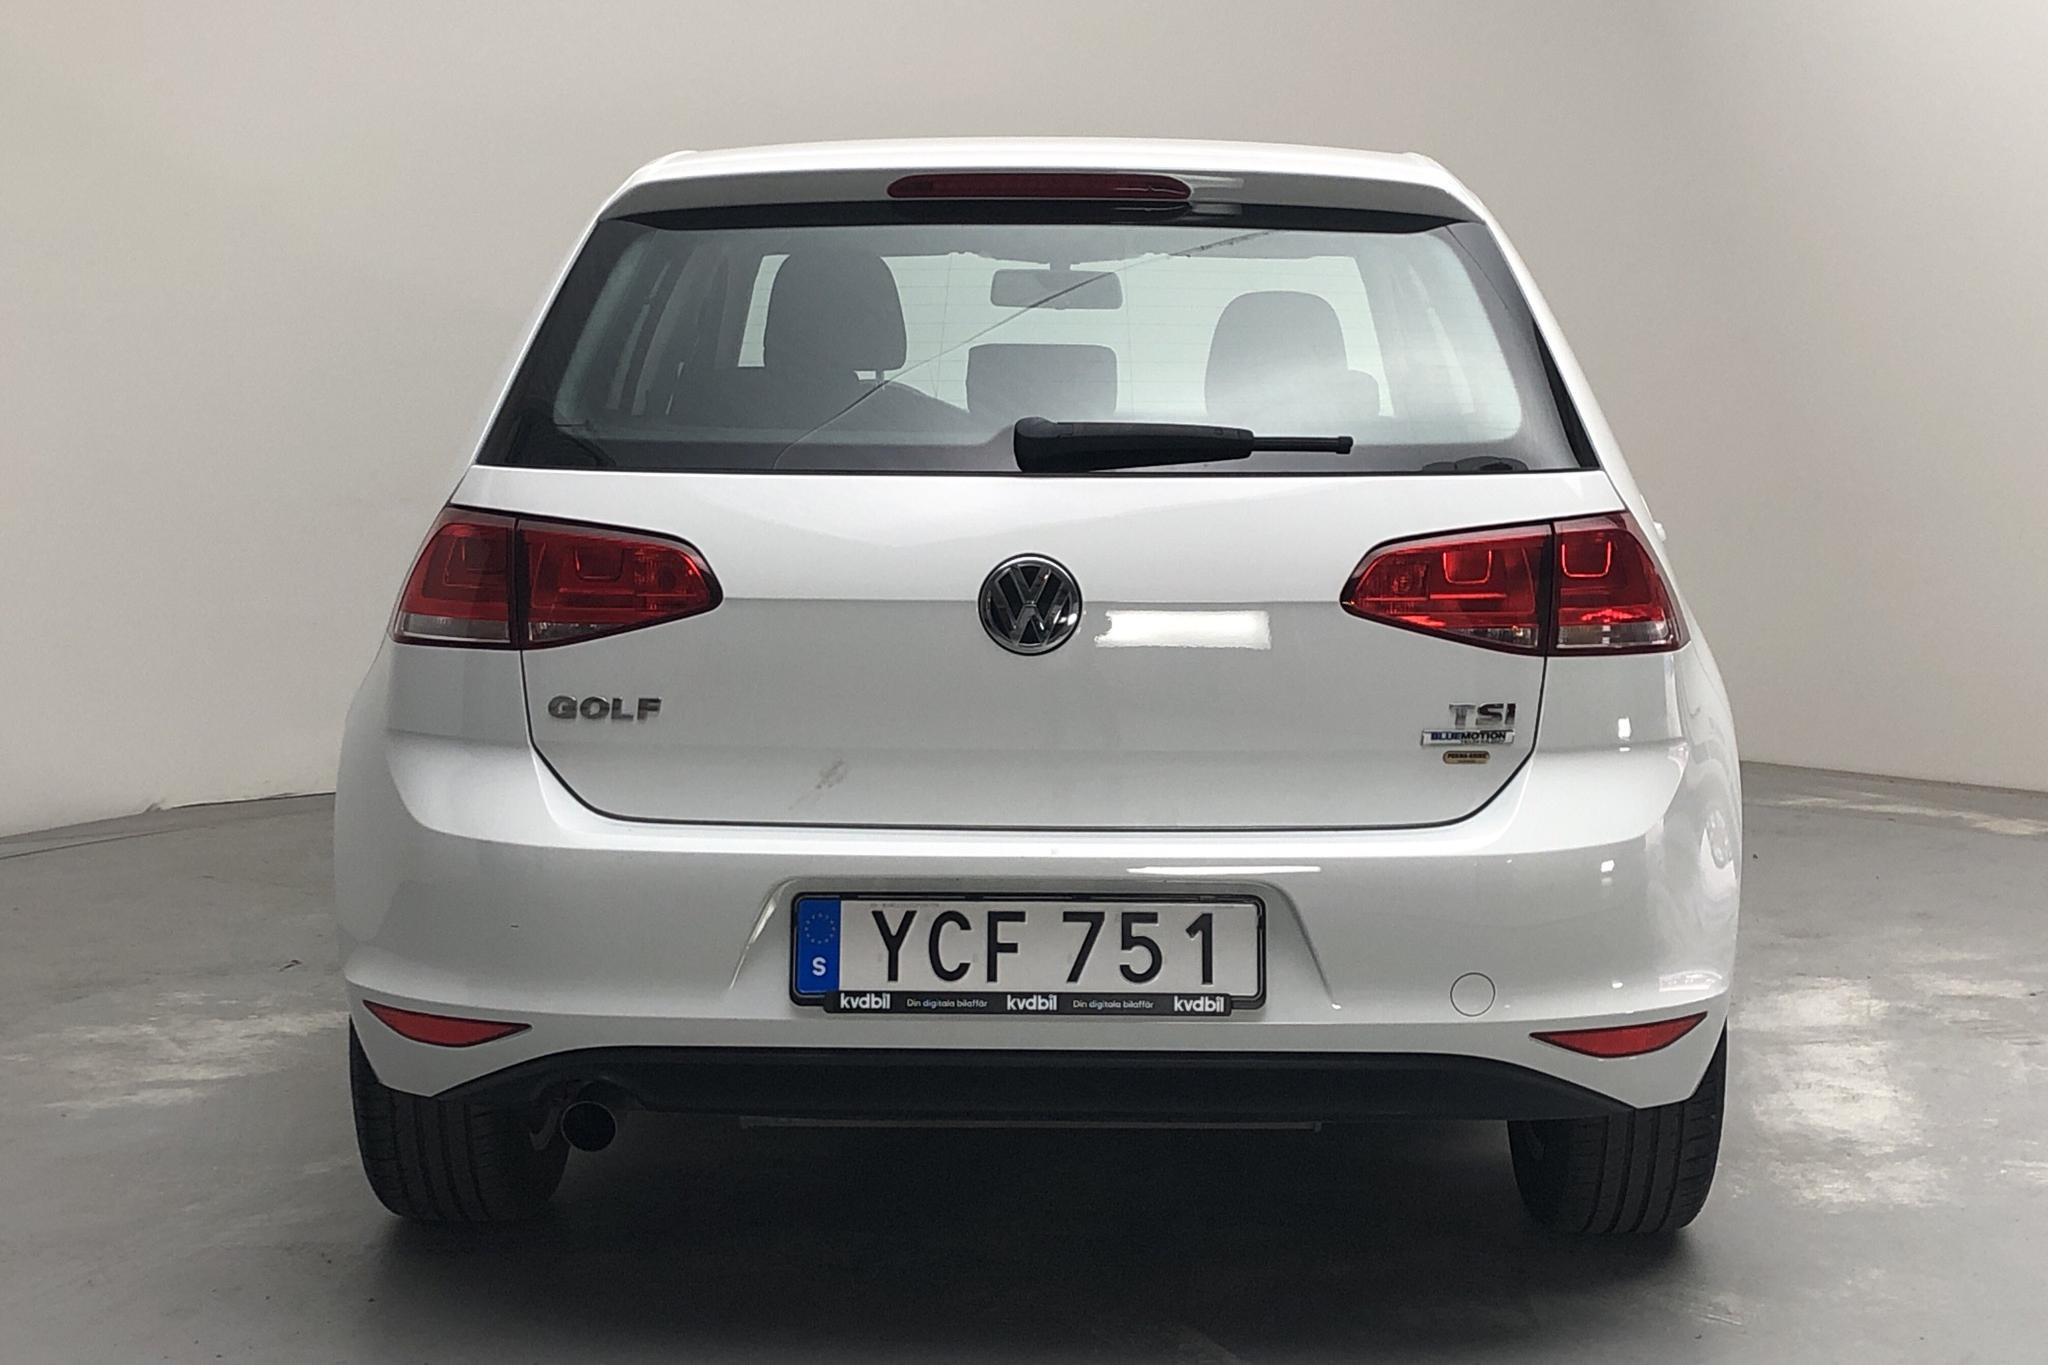 VW Golf VII 1.2 TSI 5dr (110hk) - 51 890 km - Manual - white - 2016